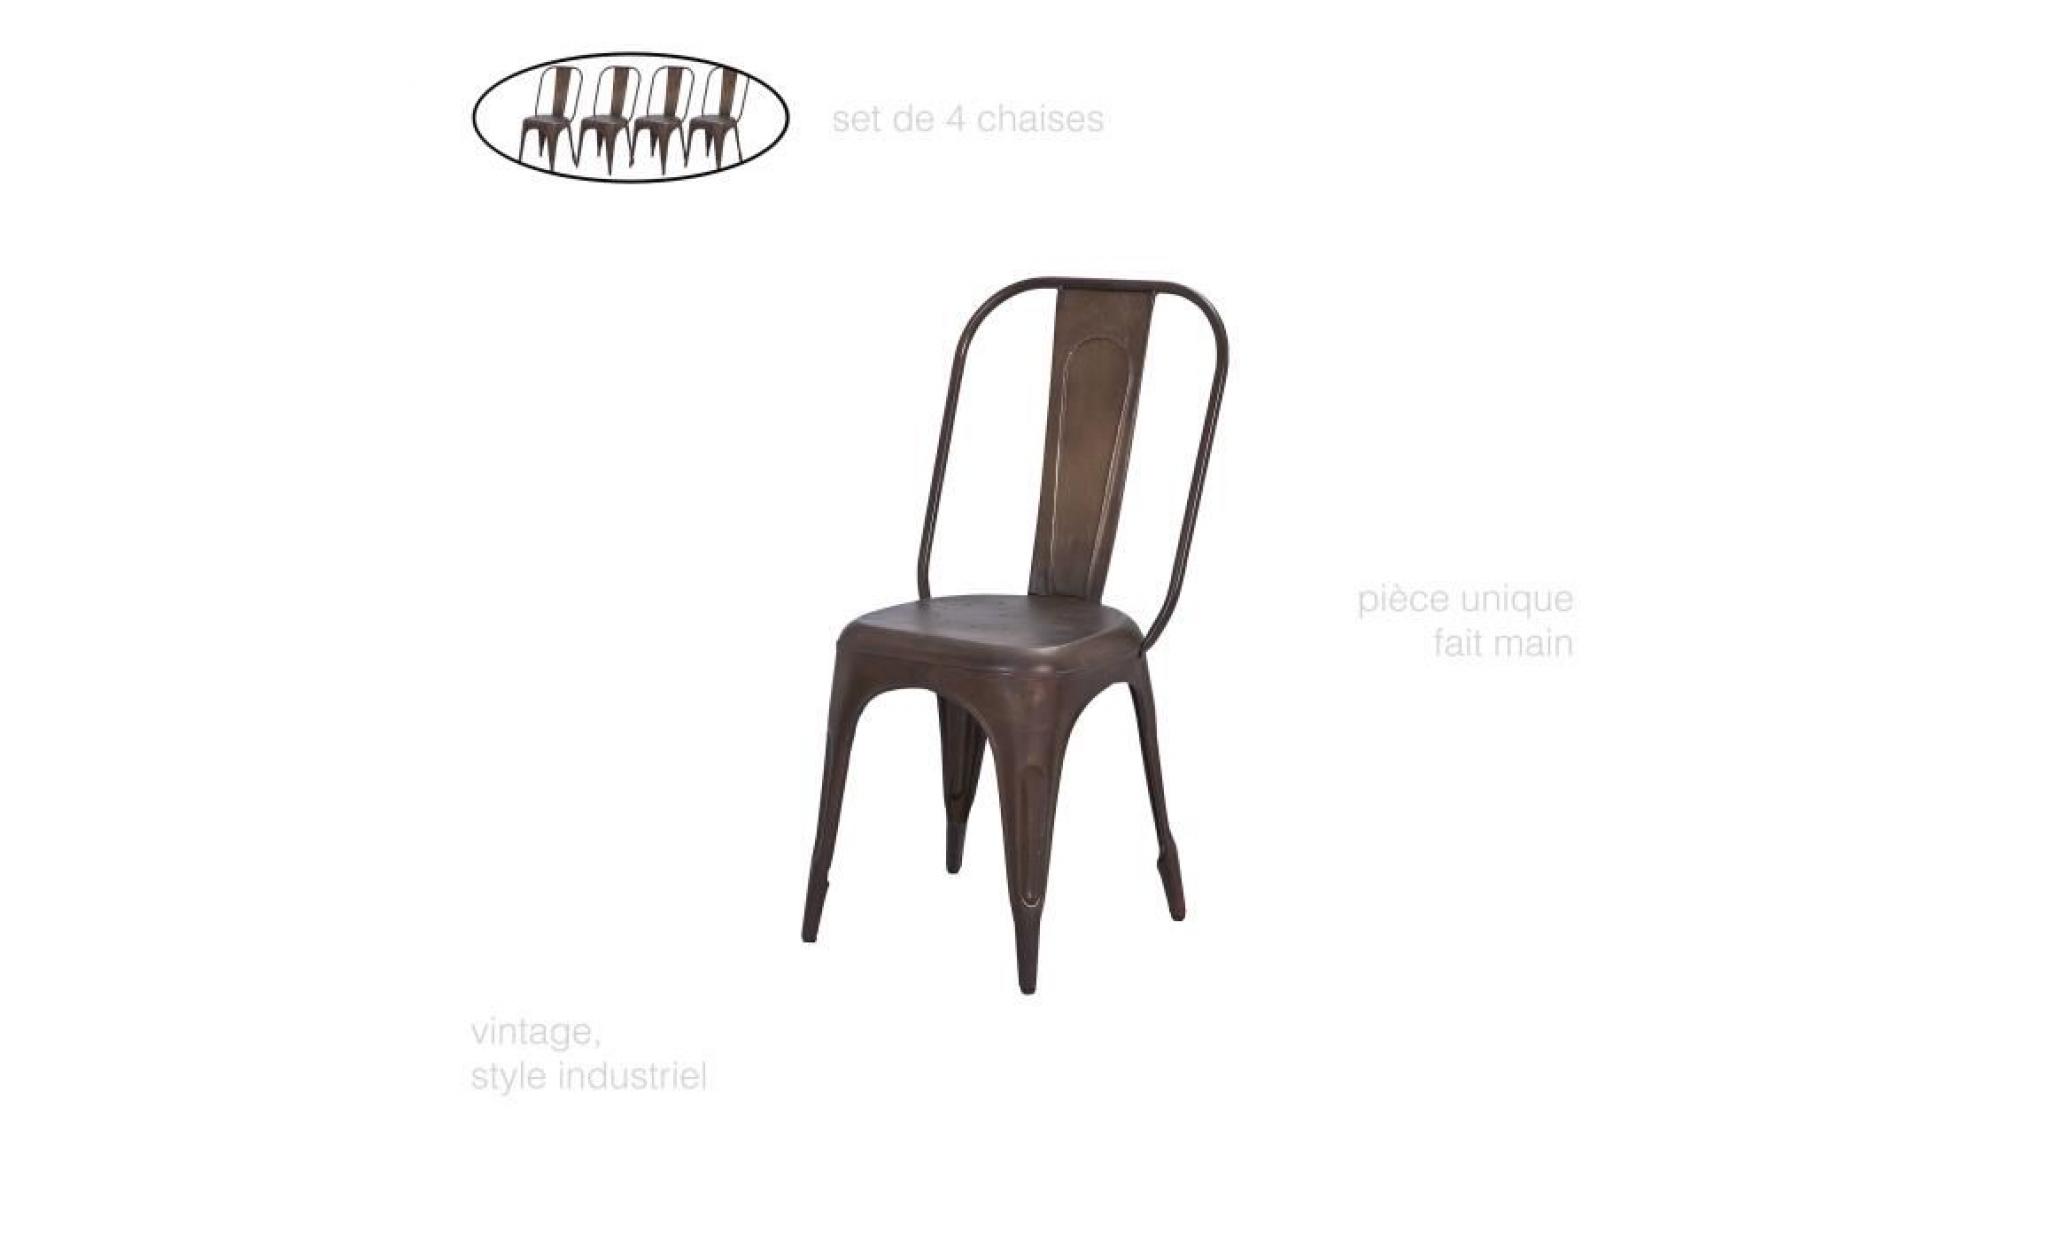 set de 4, chaise metal couleur, chaise design, chaise vintage, chaise industriel metal, chaise industrielle, chaise en fer, rouille